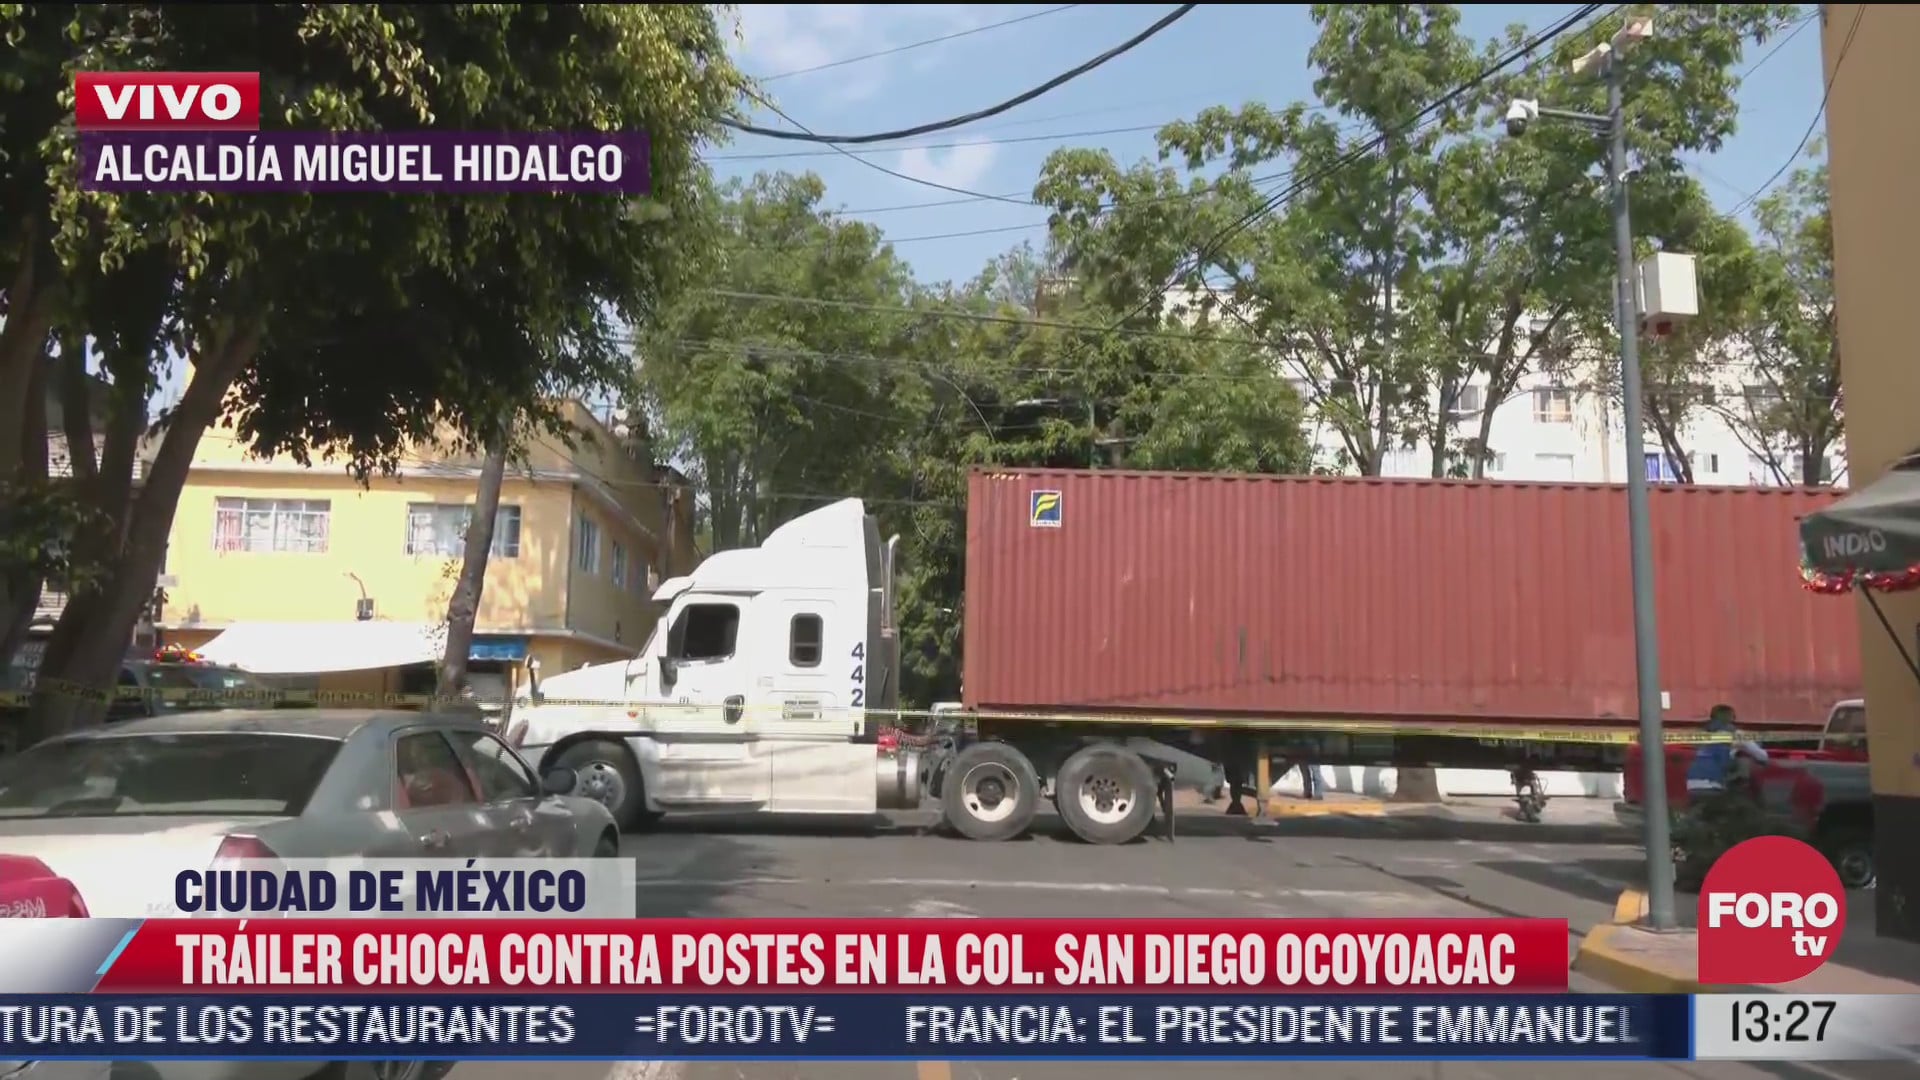 trailer choca contra poste y provoca danos en san diego ocoyoacac